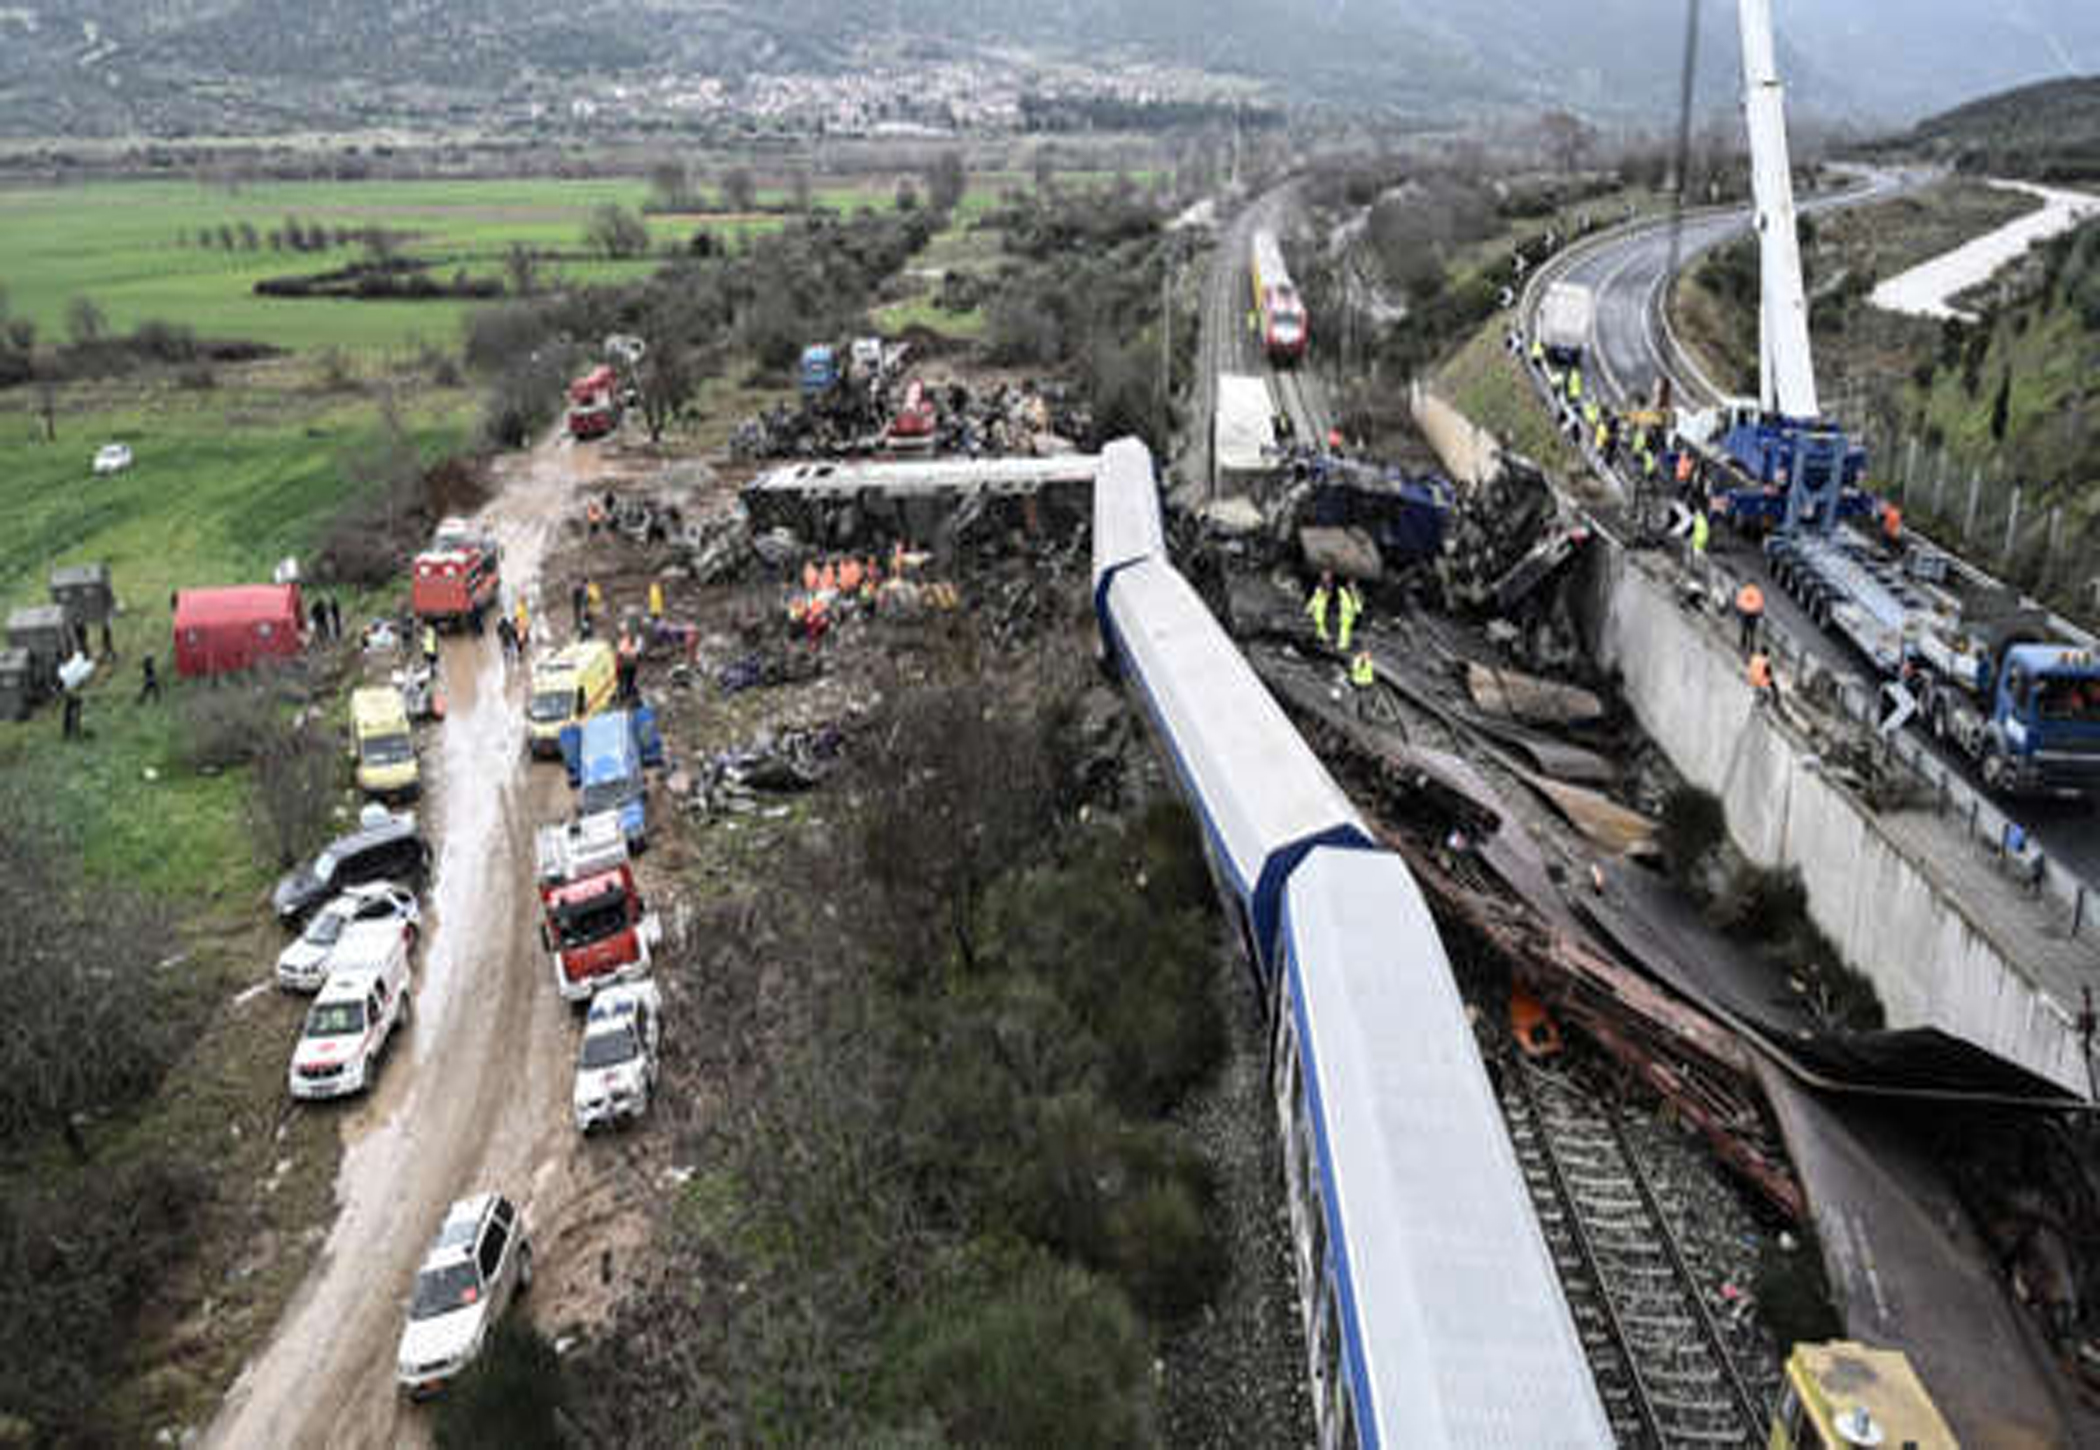 Tragédie ferroviaire en Grèce: près de 60 morts, le chef de gare avoue "une erreur"